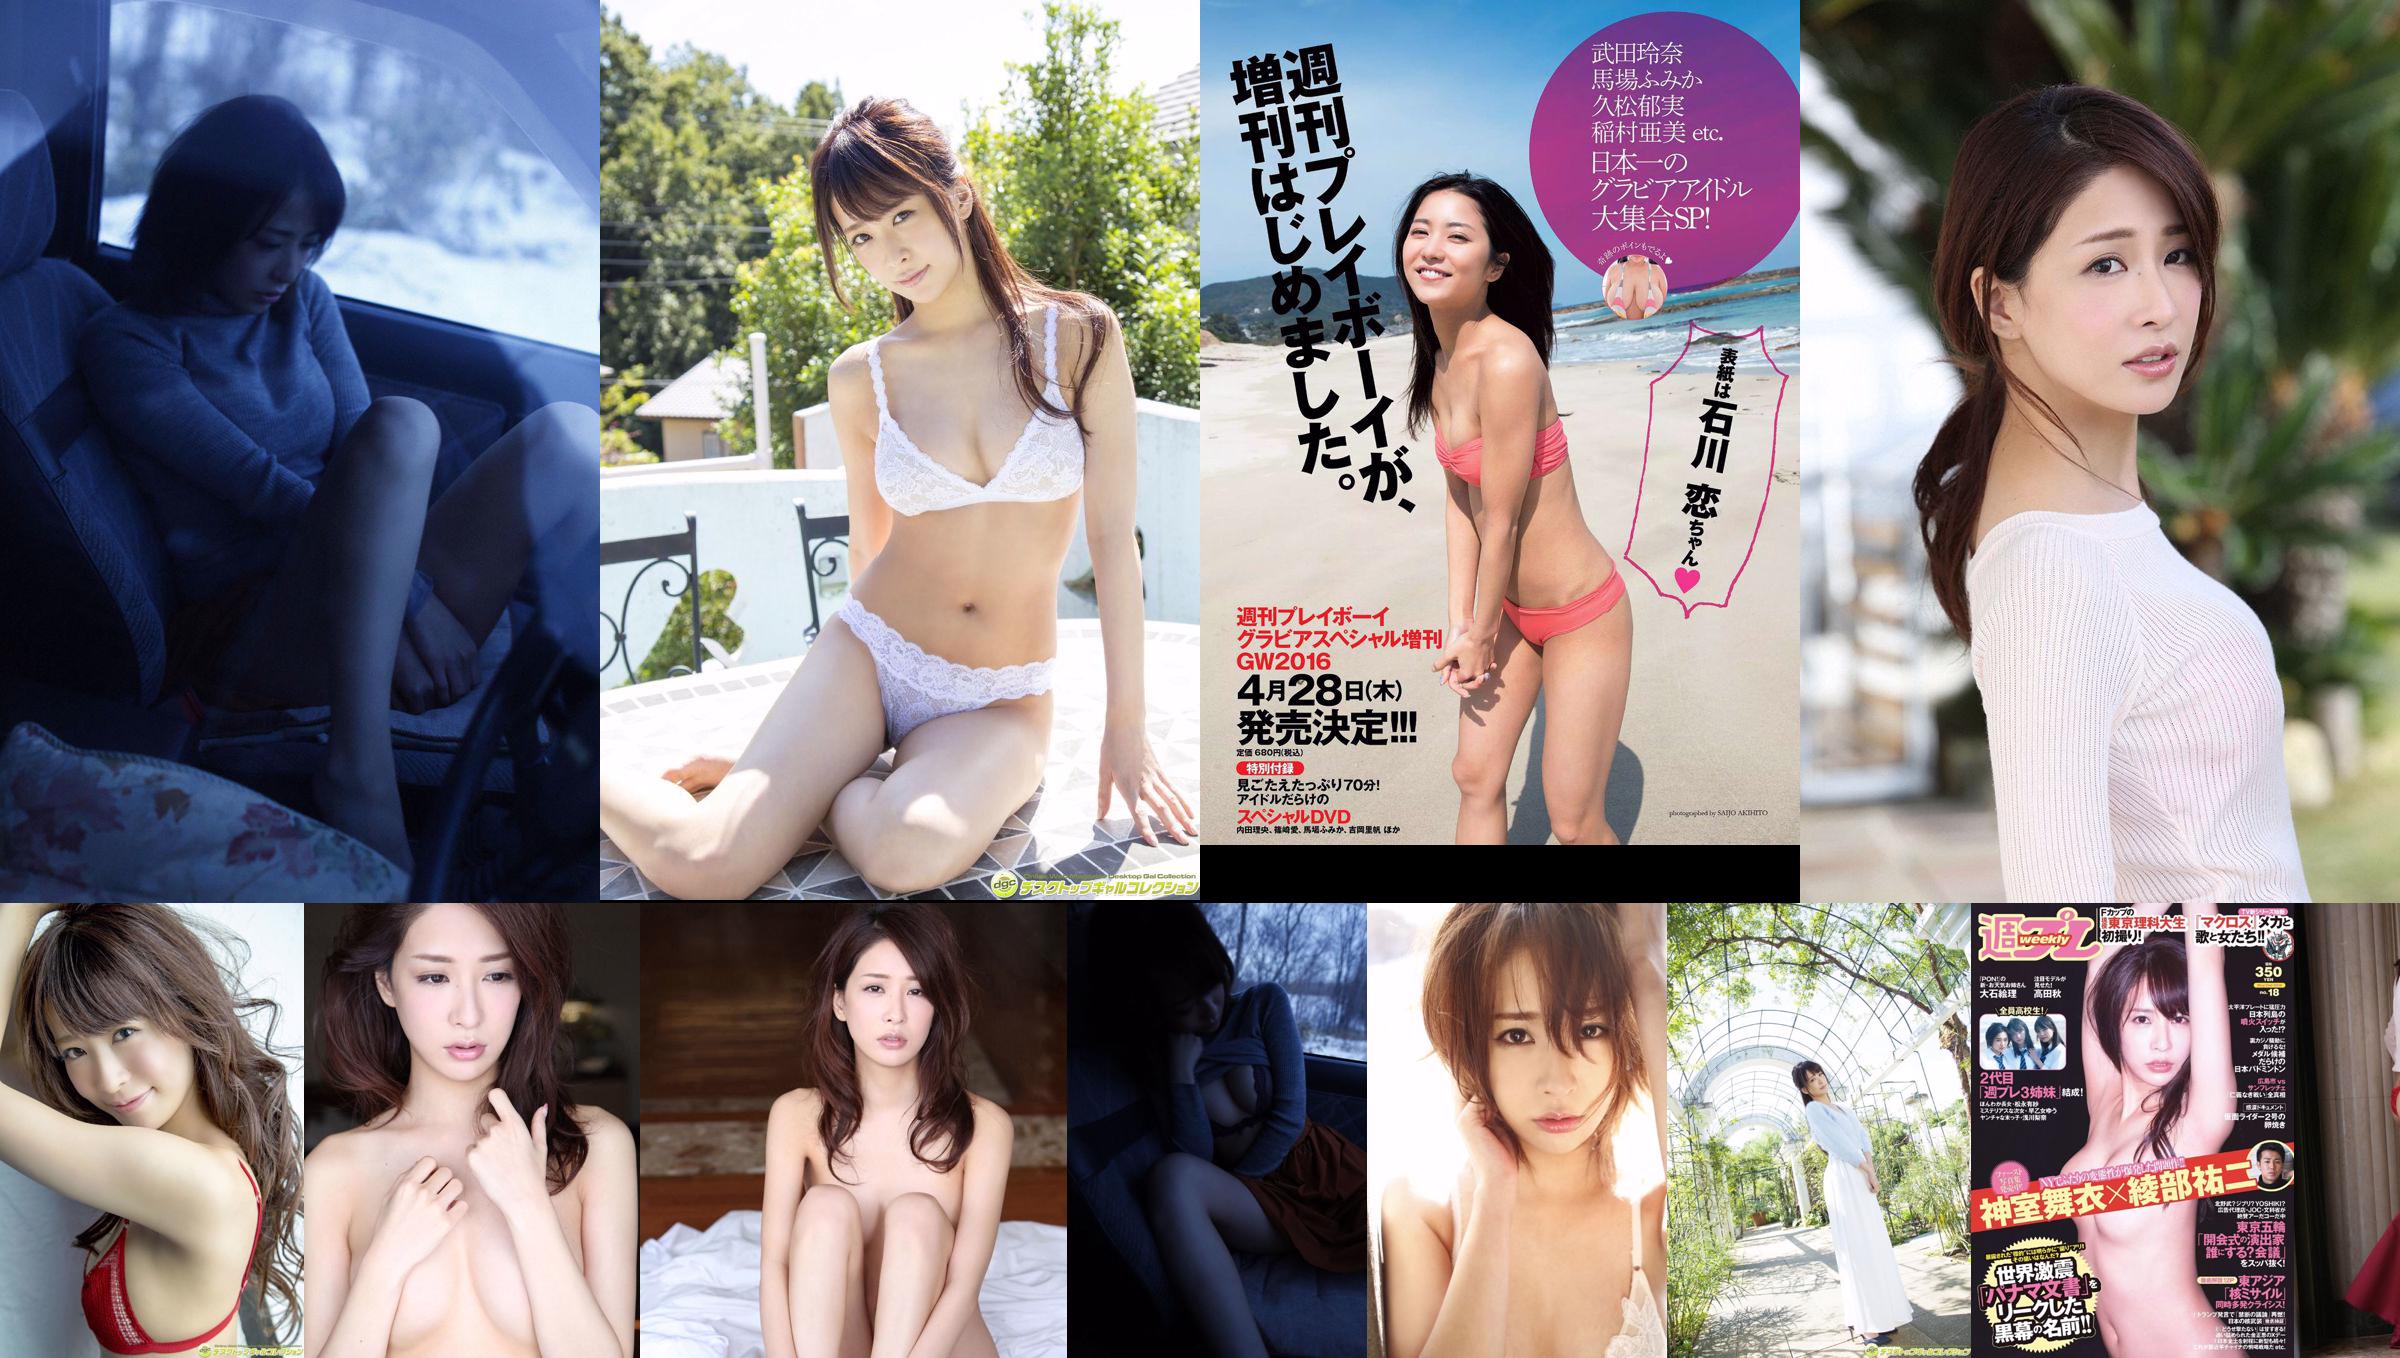 Mai Kamuro Arisa Matsunaga Yu Saotome Rina Asakawa Shu Takada Ayana Takeda Eri Oishi [Weekly Playboy] 2016 No.18 Photograph No.38bab9 Pagina 1